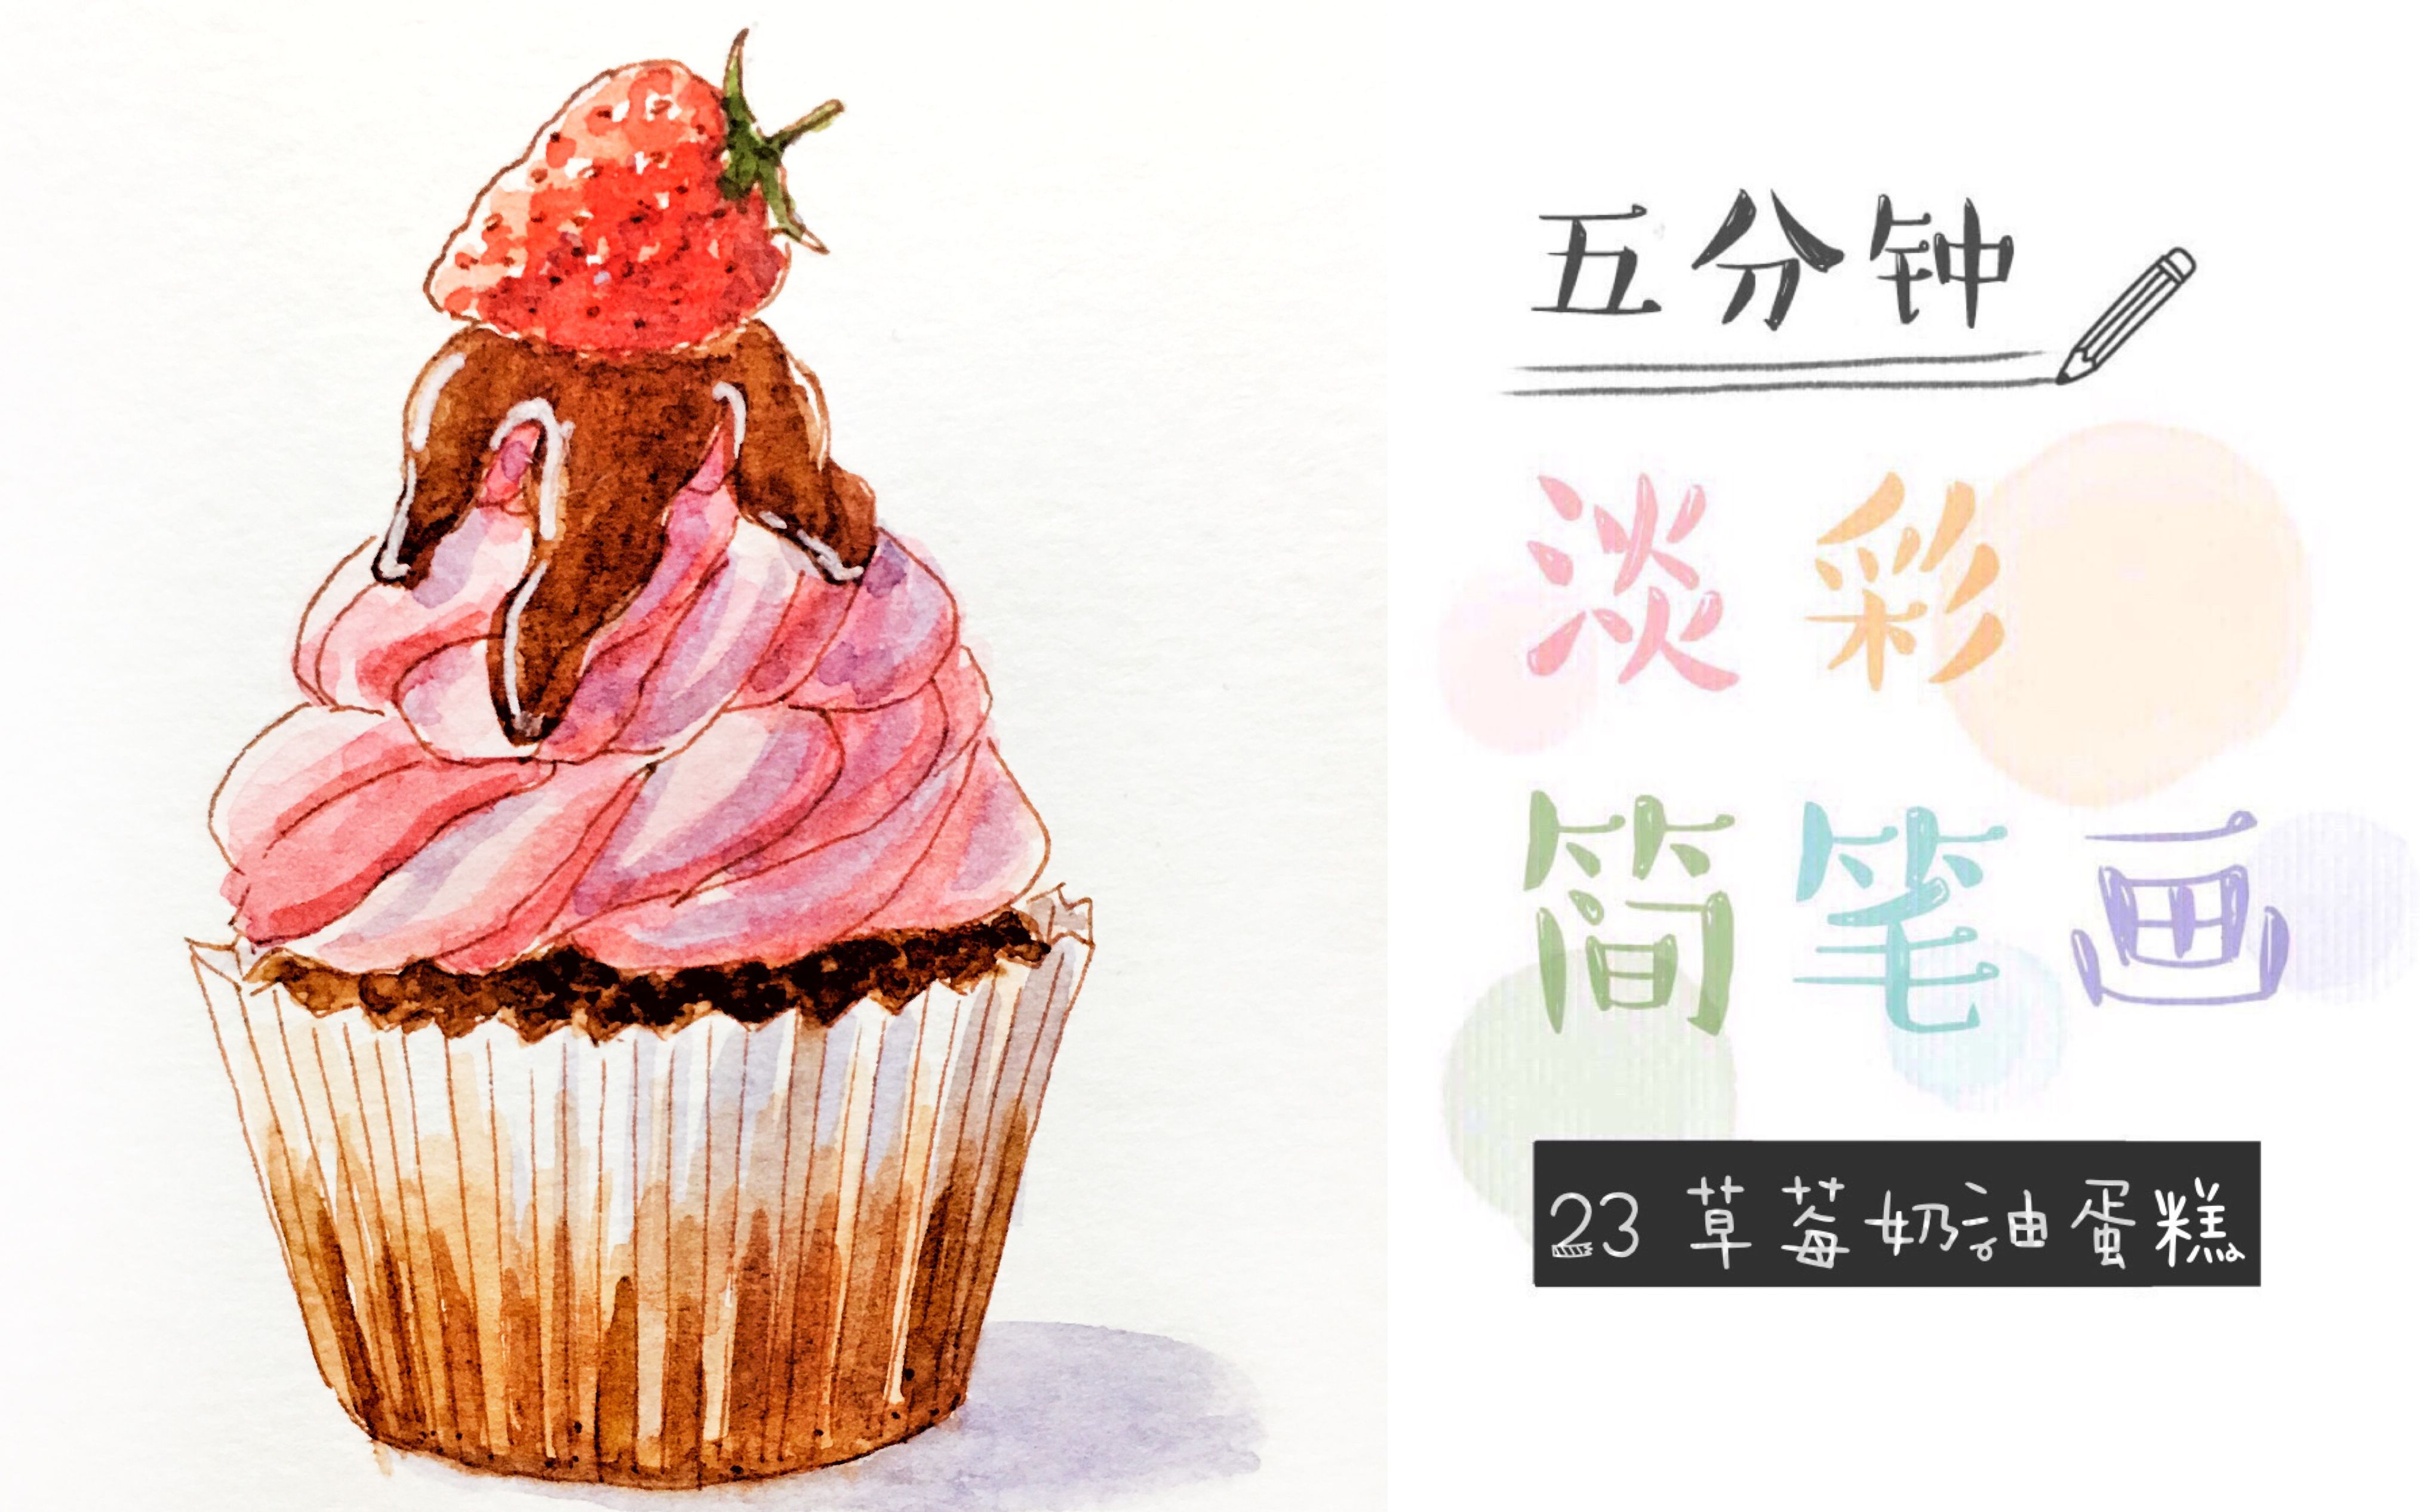 水彩过程五分钟淡彩简笔画23草莓奶油蛋糕